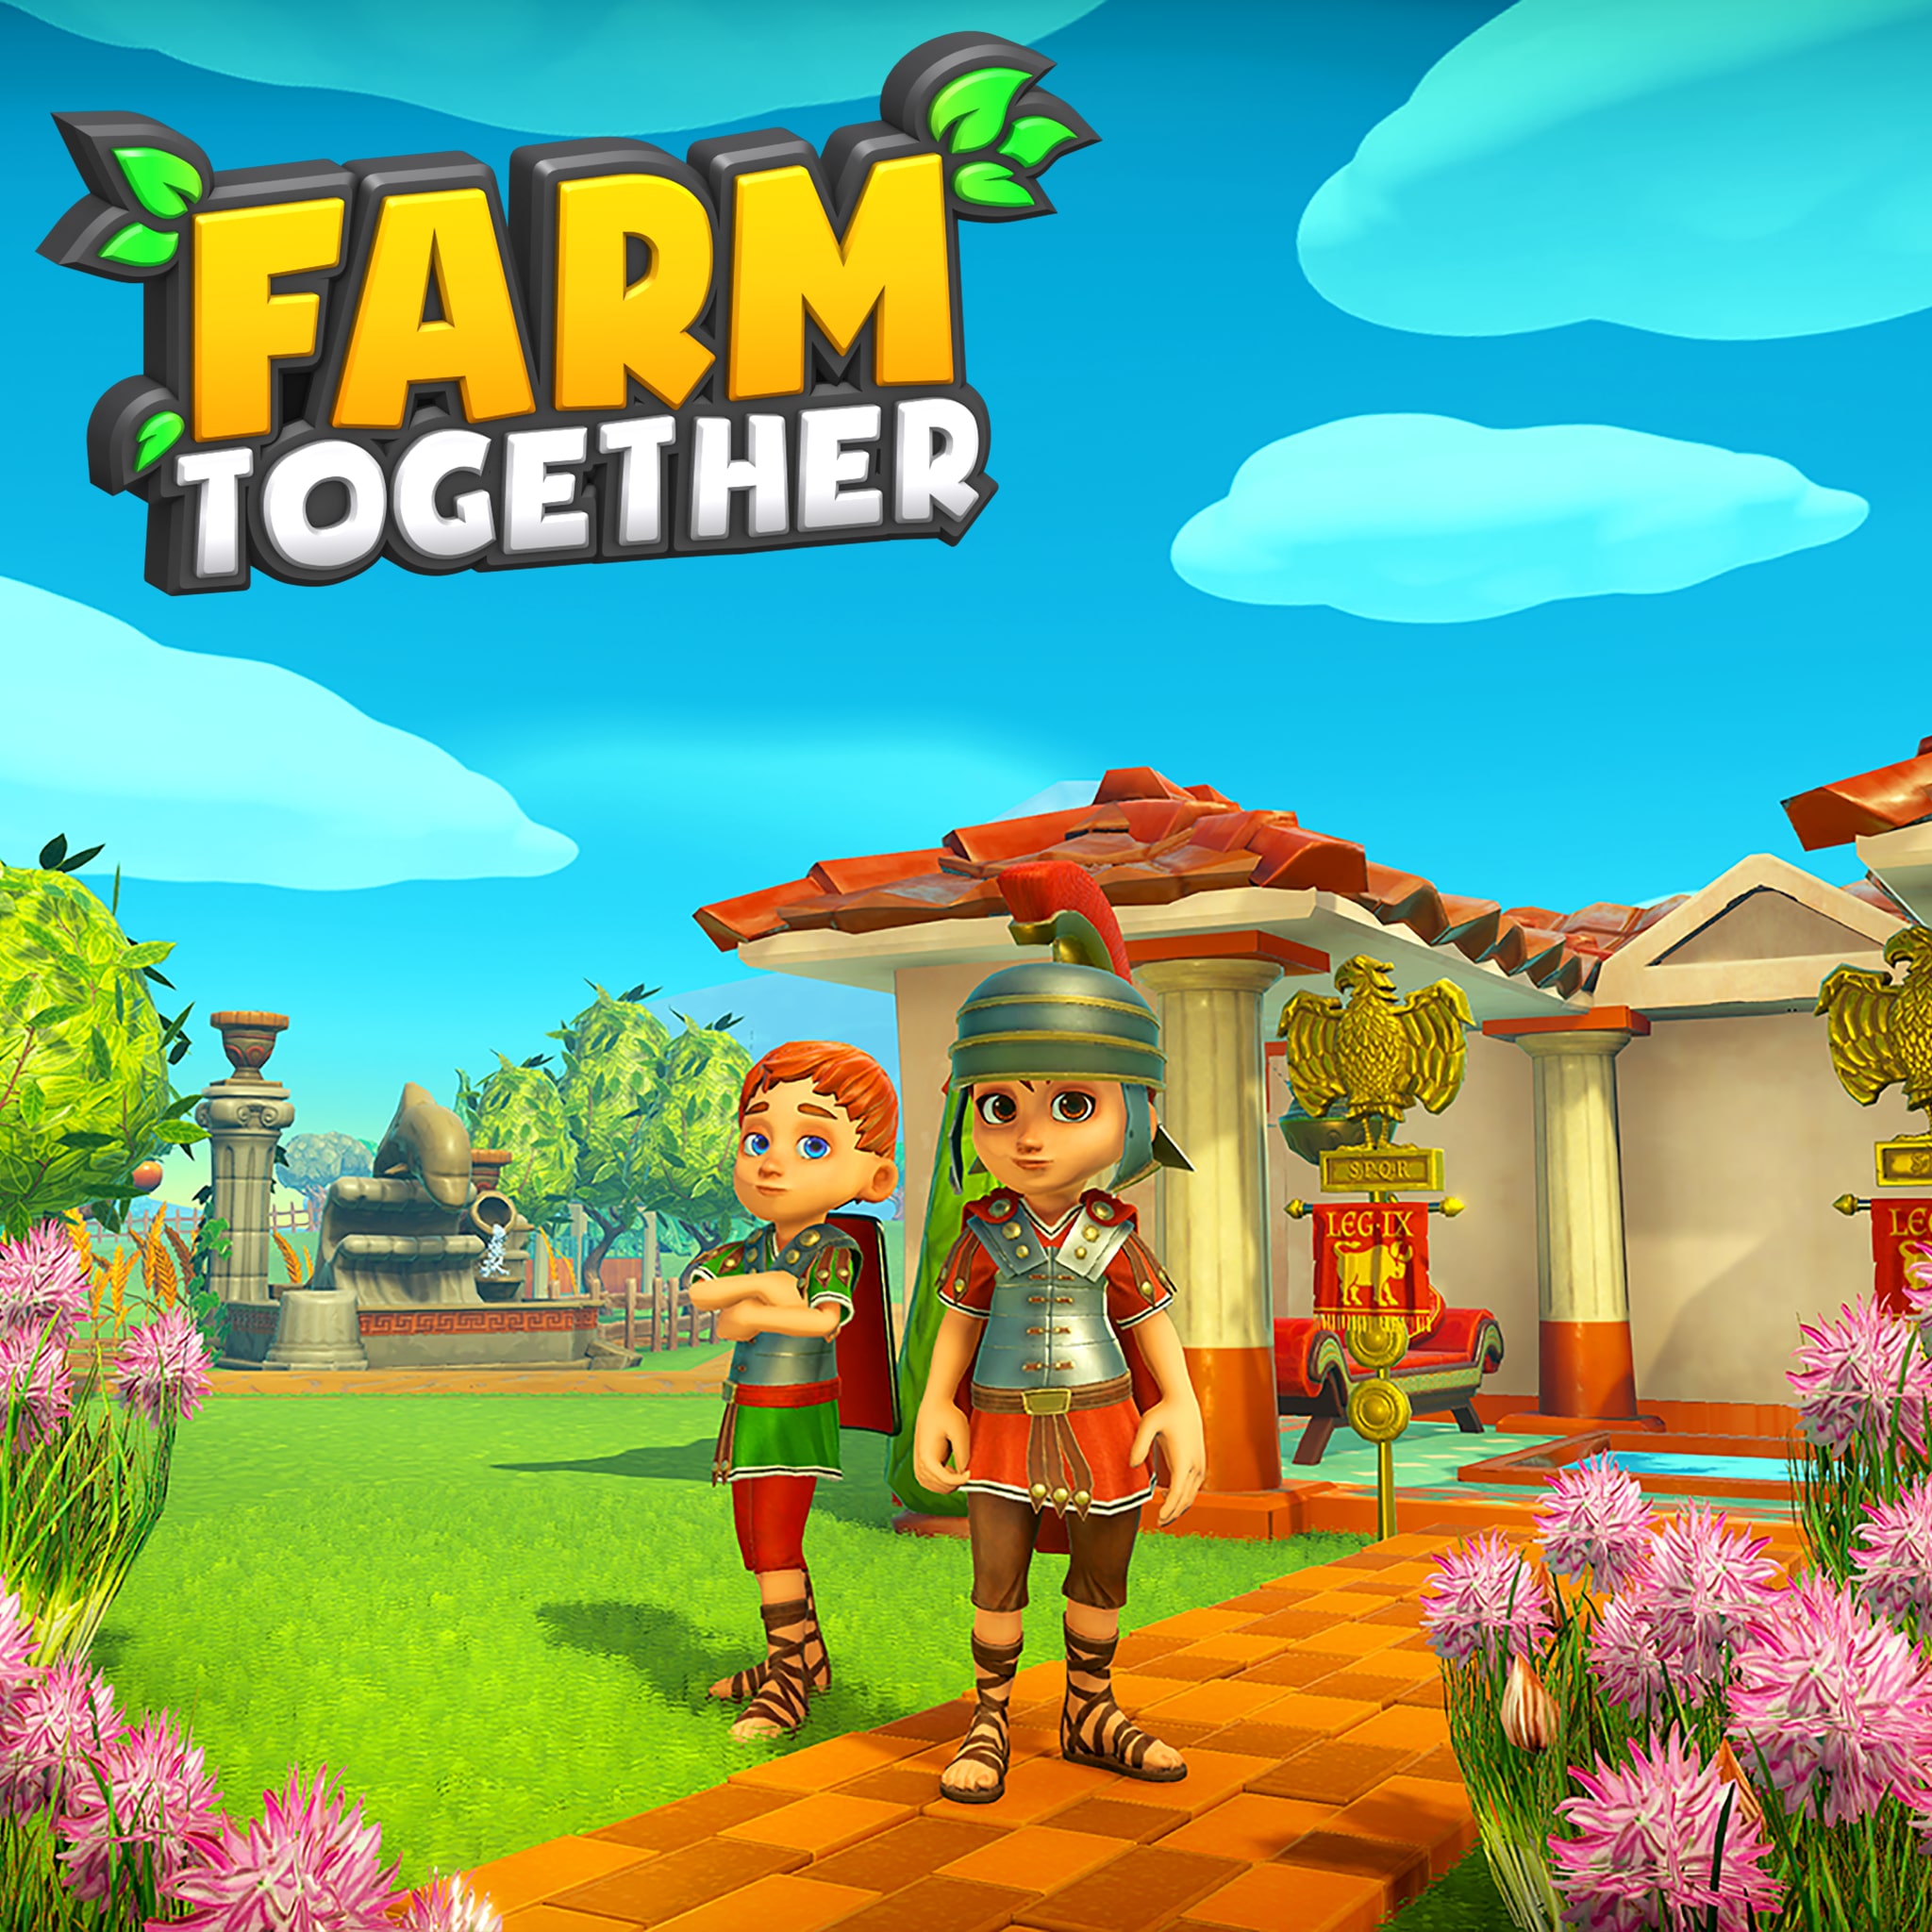 Игра Farm together. Farm together обложка. Farm together мультиплеер. Farm together DLC Polar Pack животные.